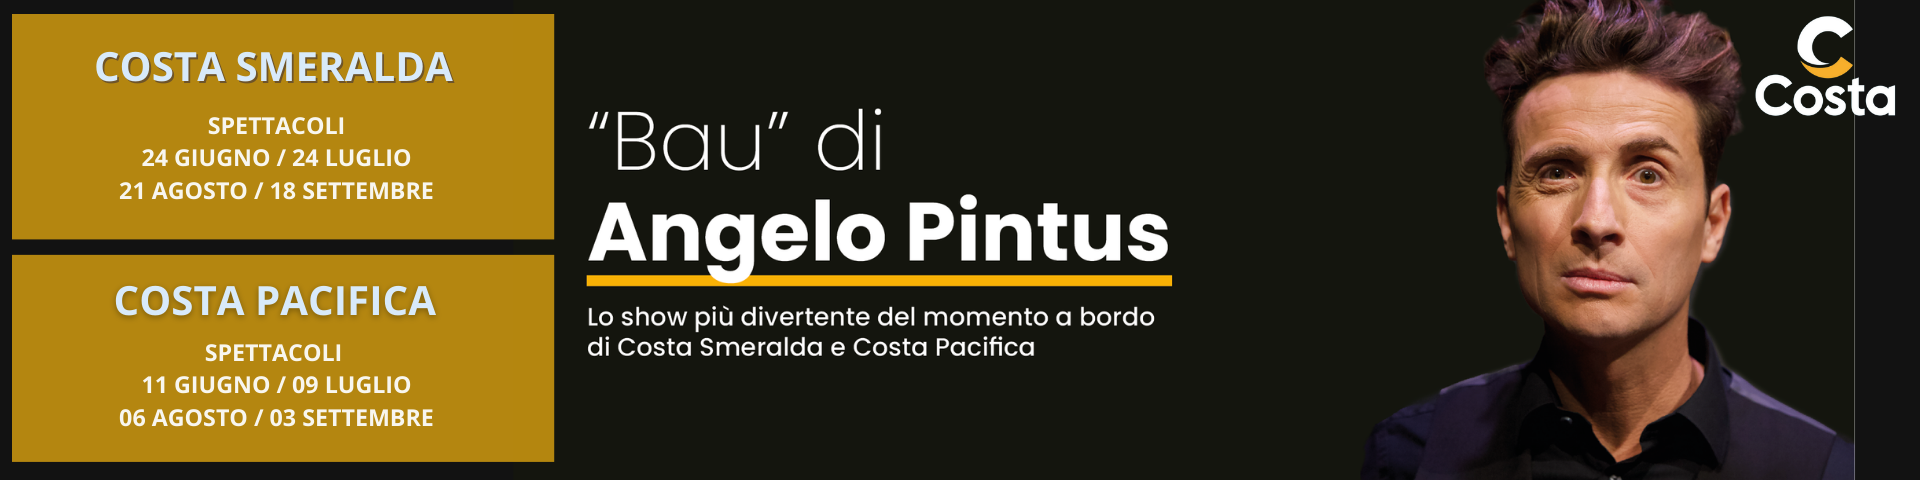 Angelo Pintus su Costa Crociere